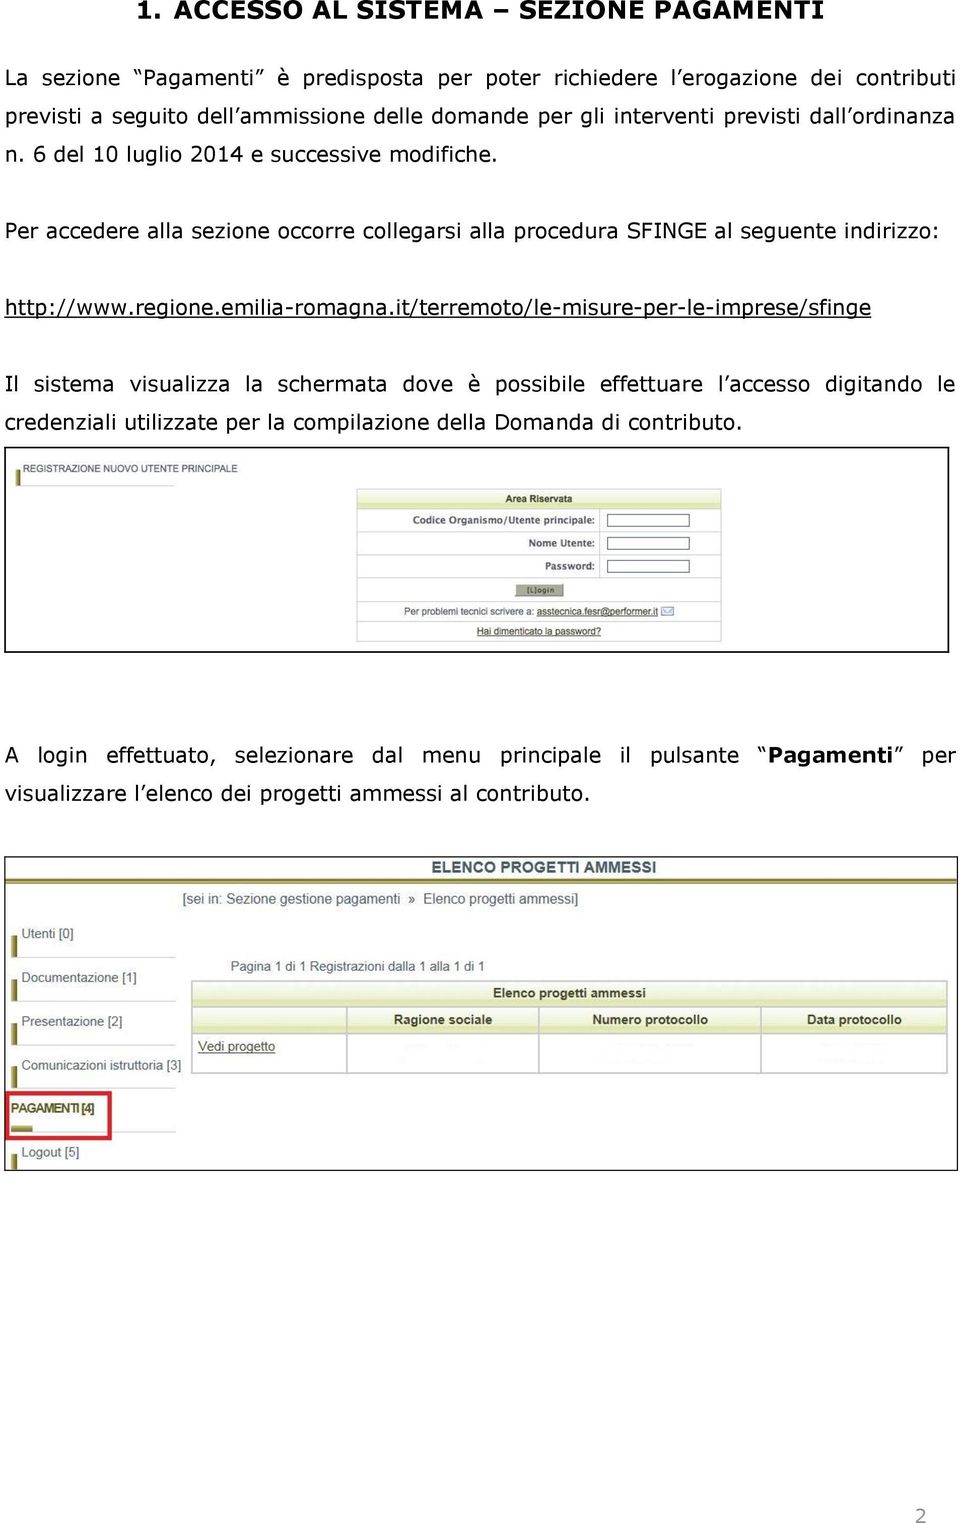 Per accedere alla sezione occorre collegarsi alla procedura SFINGE al seguente indirizzo: http://www.regione.emilia-romagna.